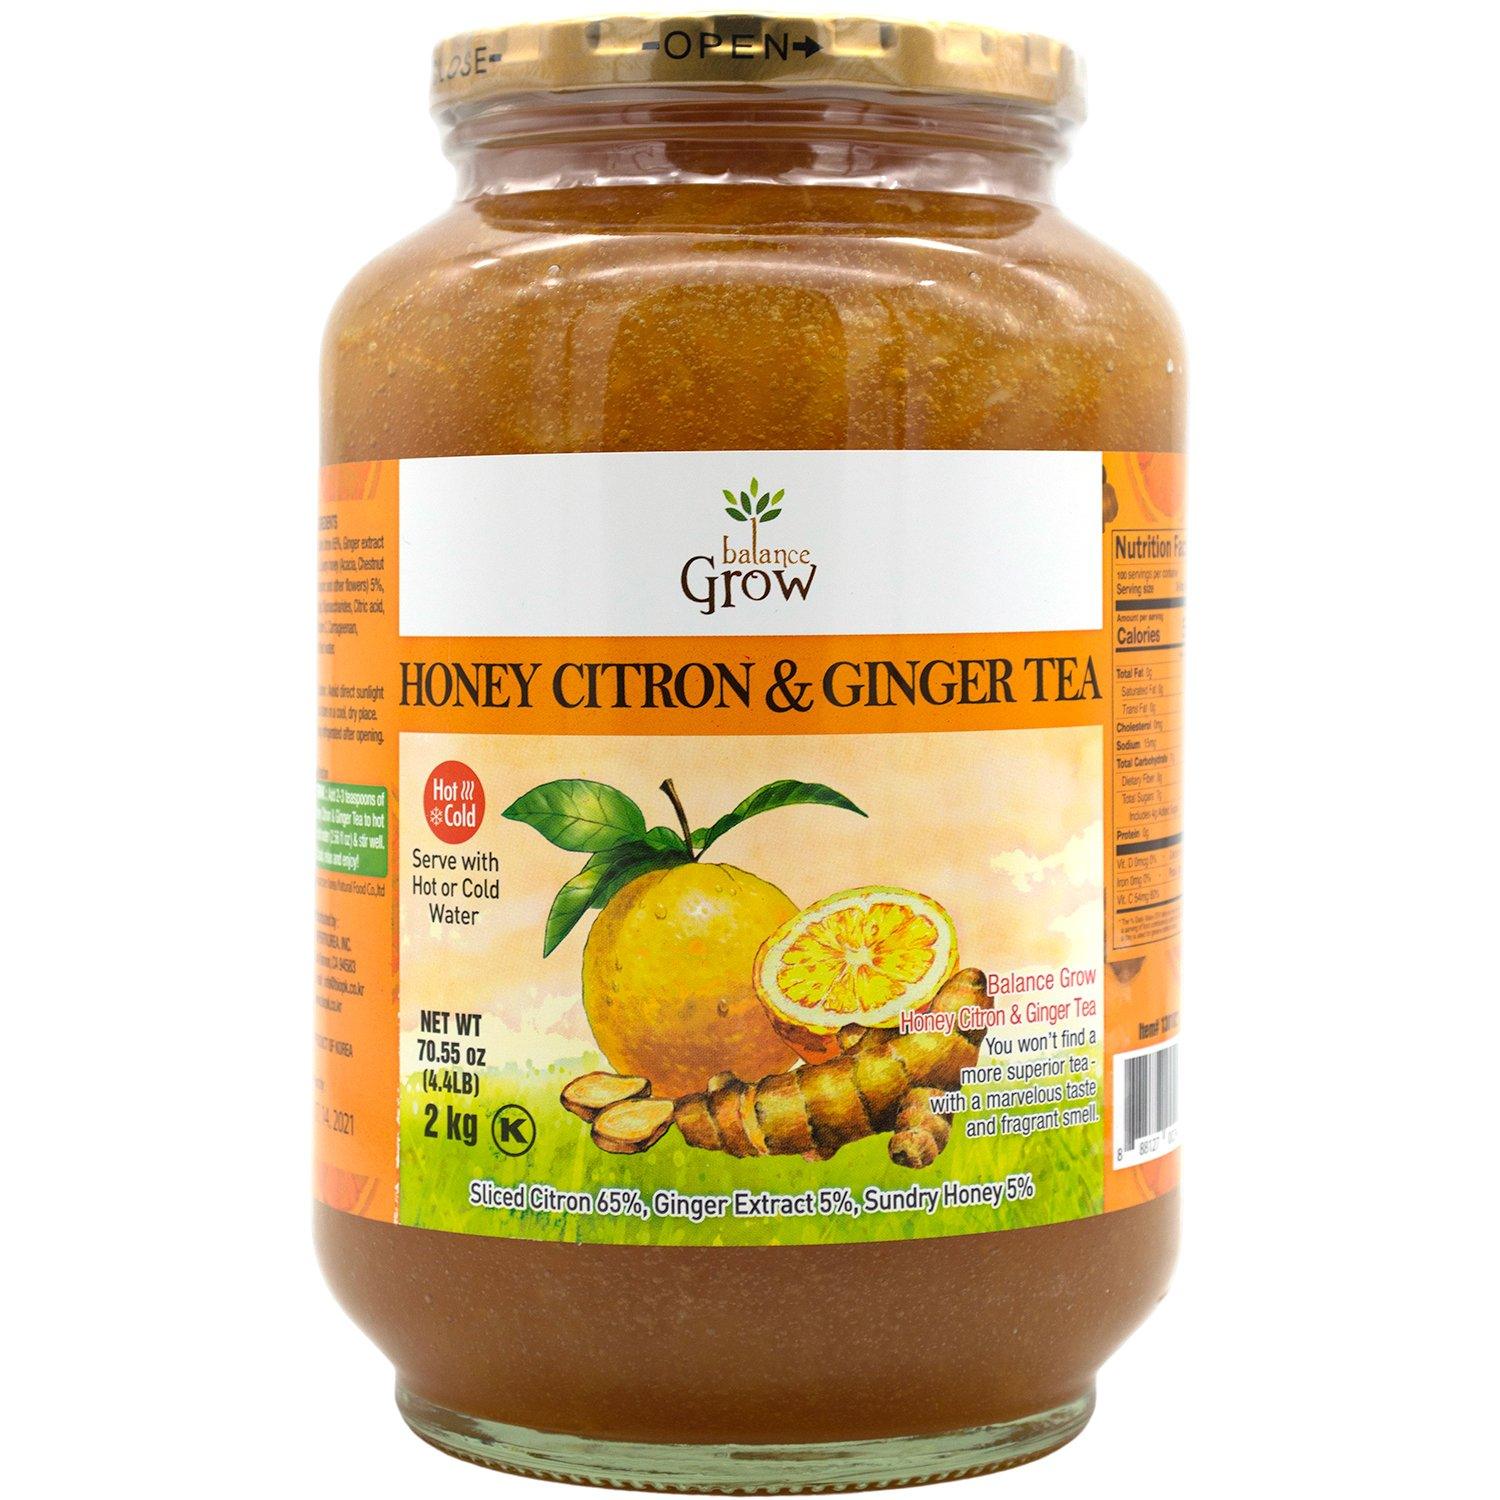 Balance Grow Honey Citron & Ginger Tea Balance Grow 70.55 Ounce 